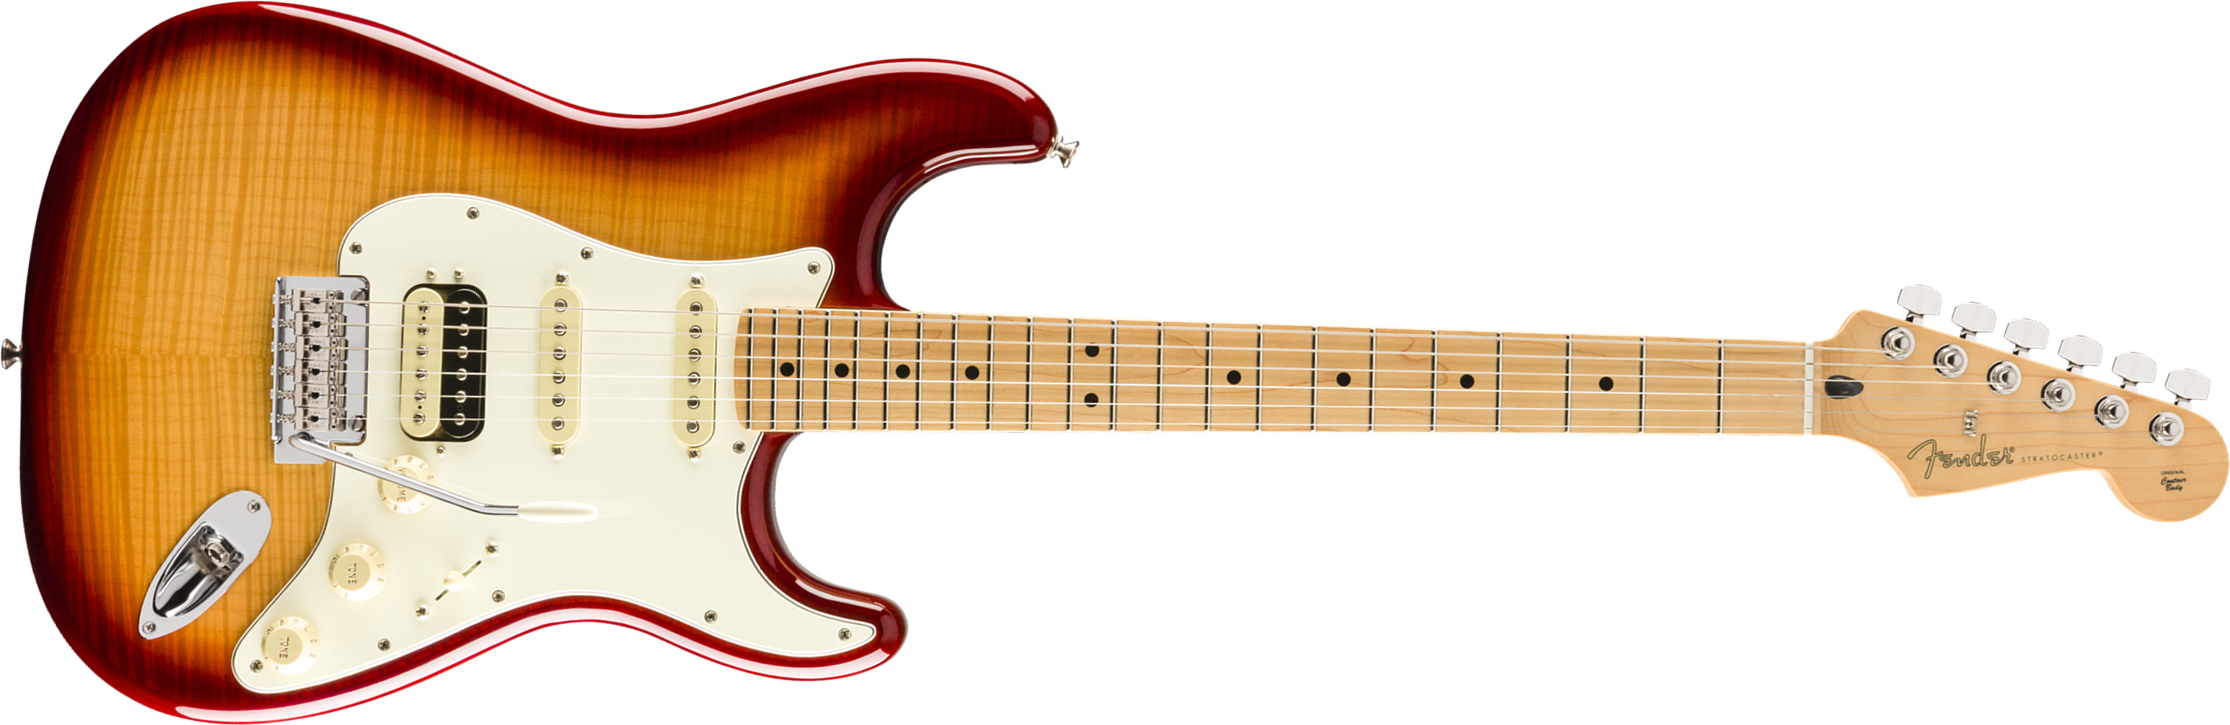 Fender Strat Player Hss Plus Top Fsr Ltd 2019 Mex Mn - Sienna Sunburst - Elektrische gitaar in Str-vorm - Main picture